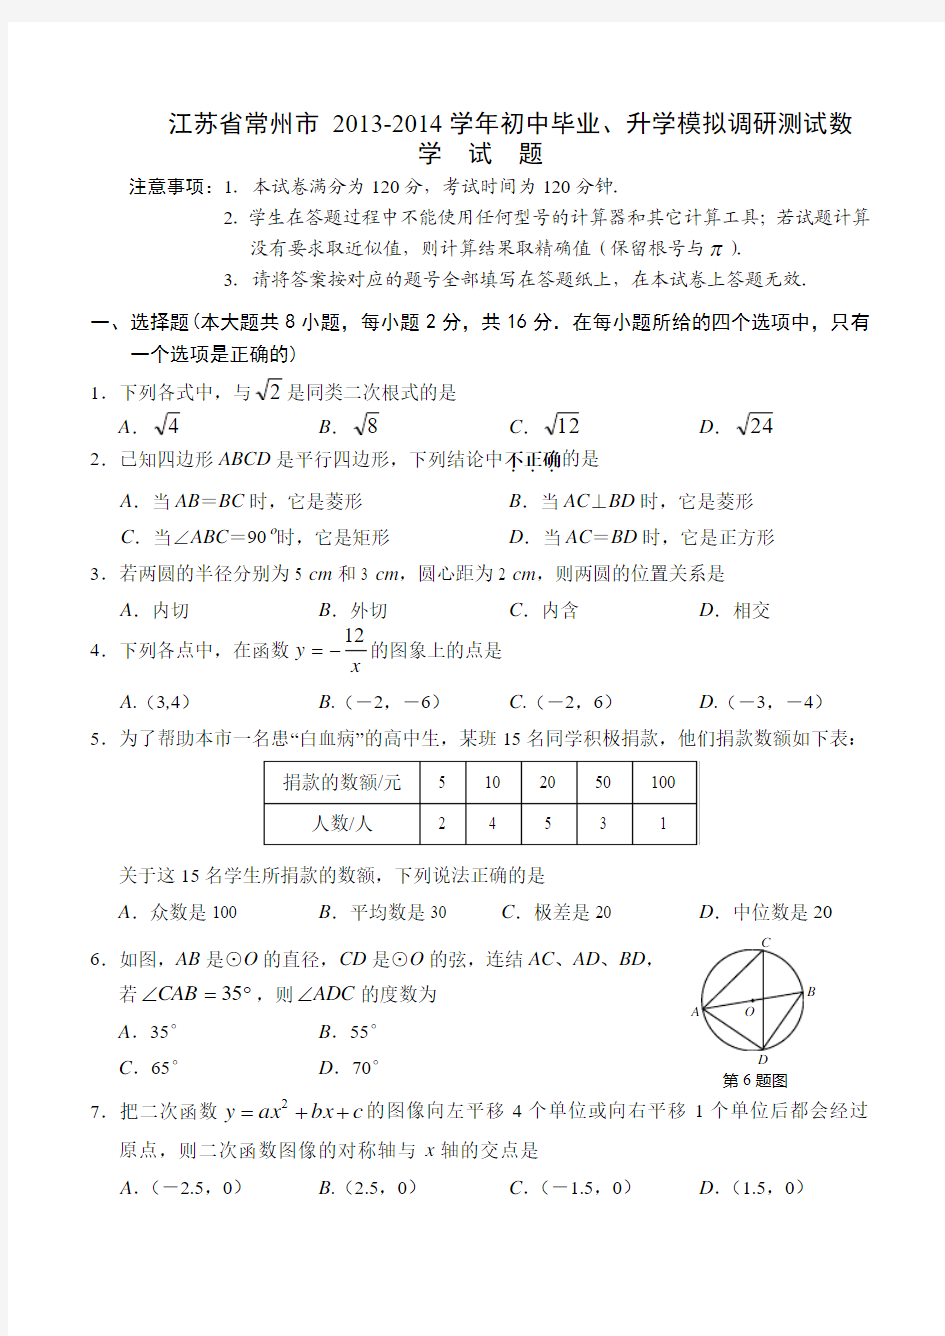 江苏省常州市 2013-2014学年初中毕业、升学模拟调研测试数  学  试  题